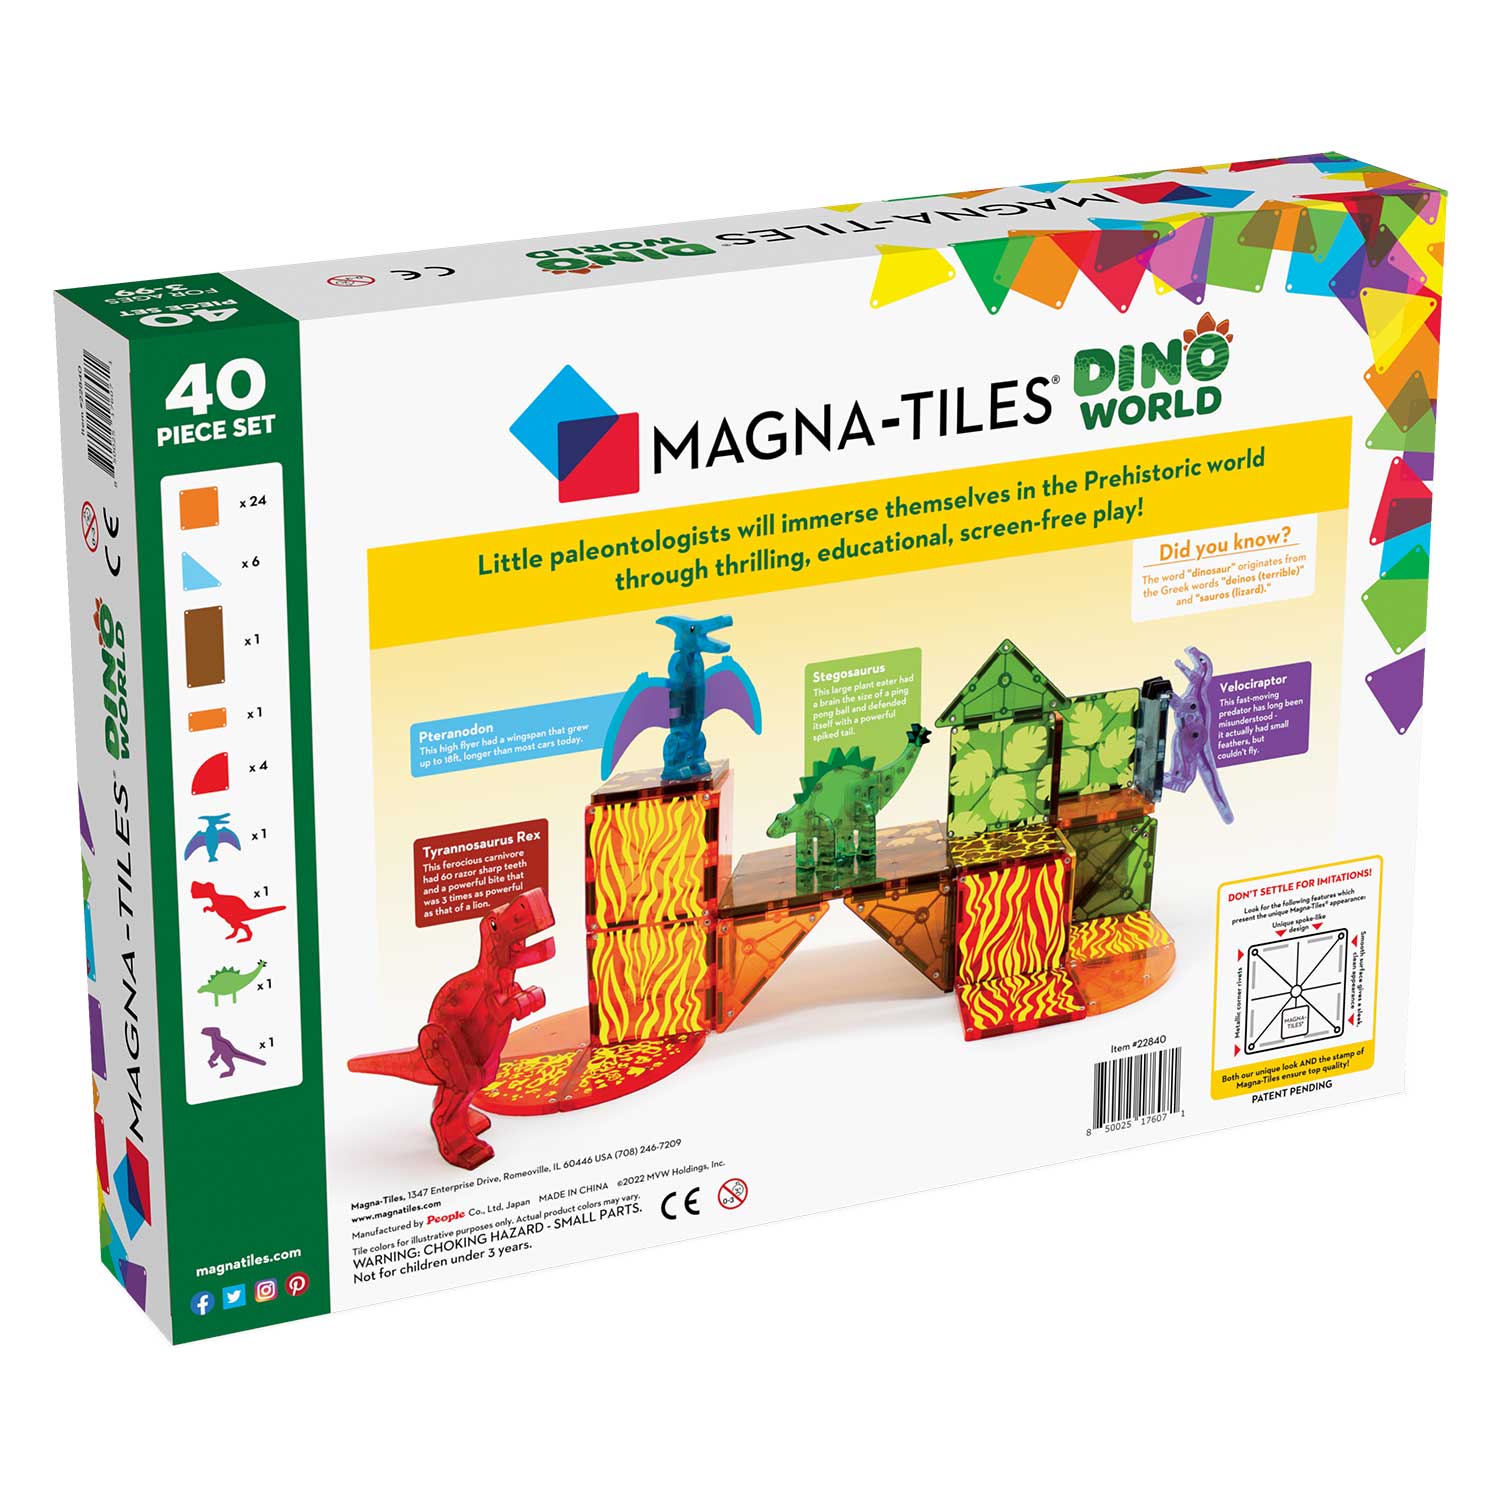  MAGNA-TILES Metropolis 110-Piece Magnetic Construction